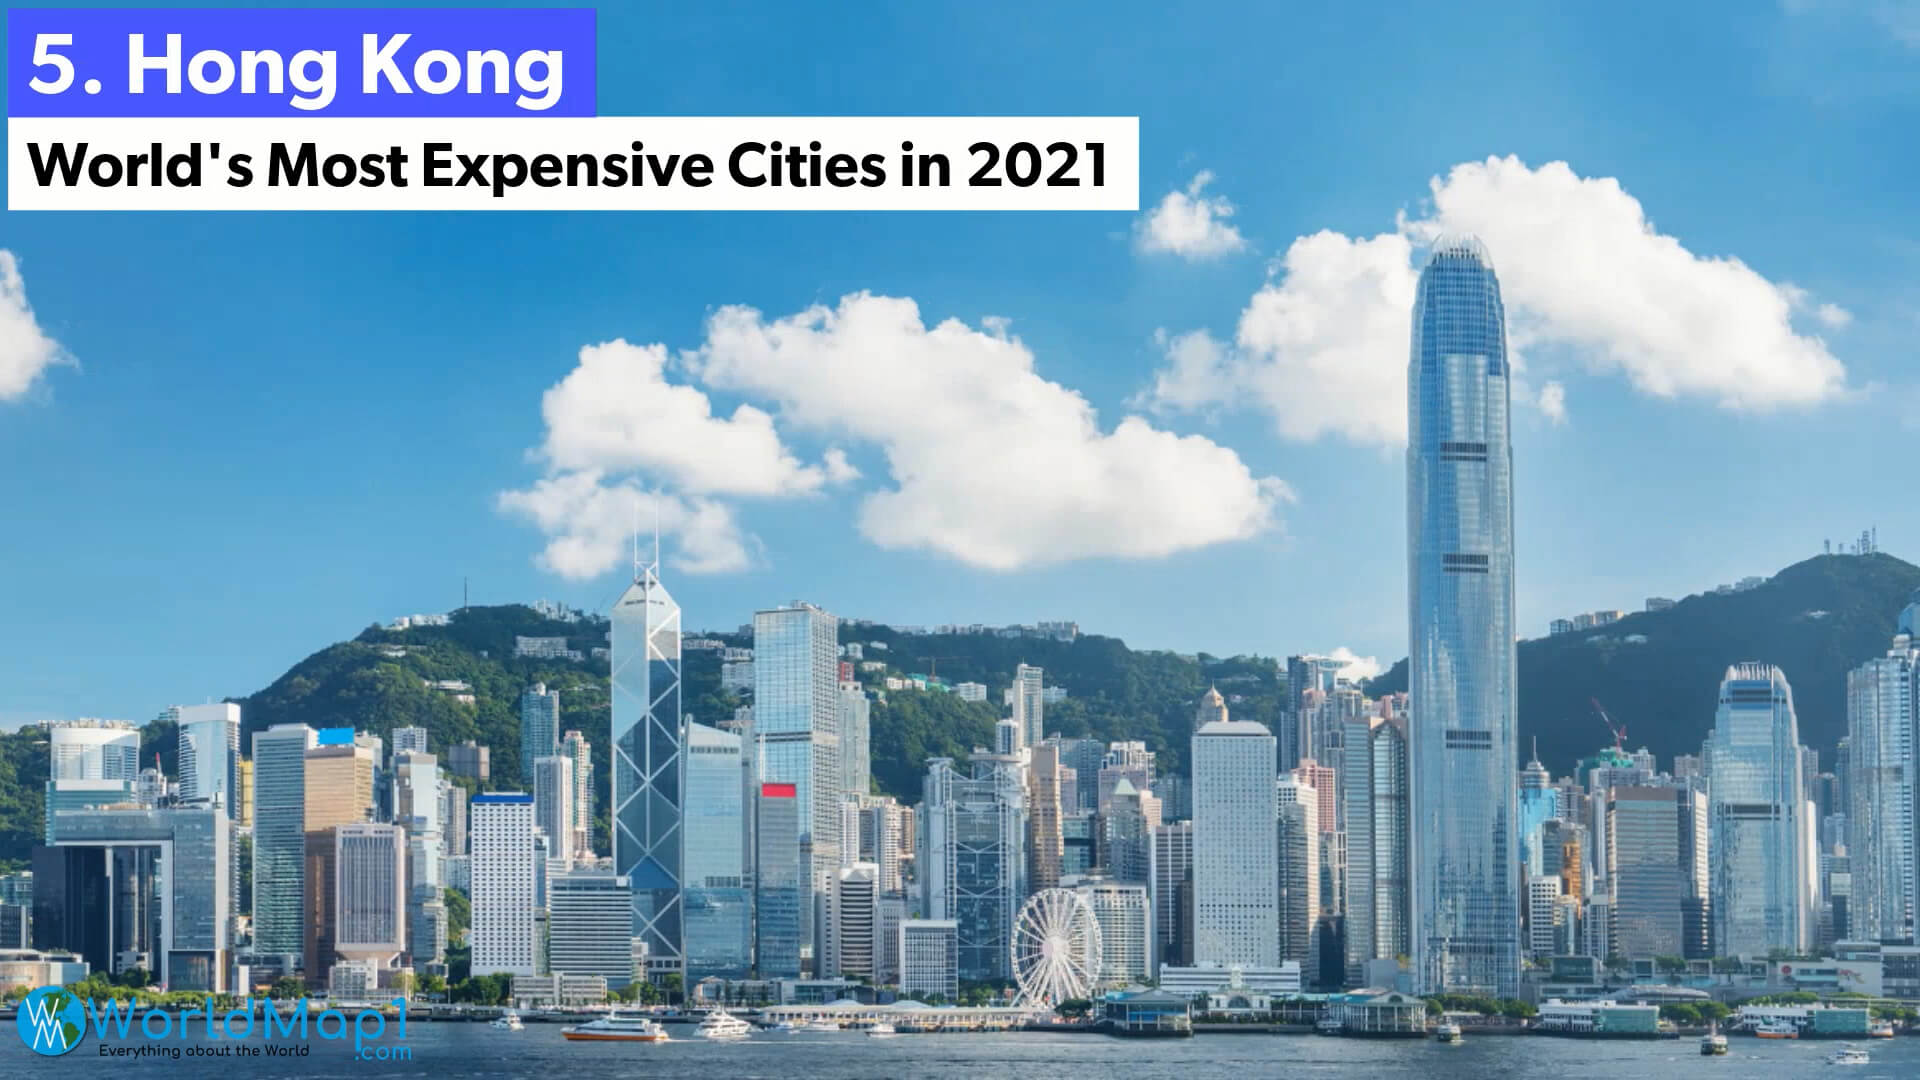 Les villes les plus chères du monde - Hong Kong